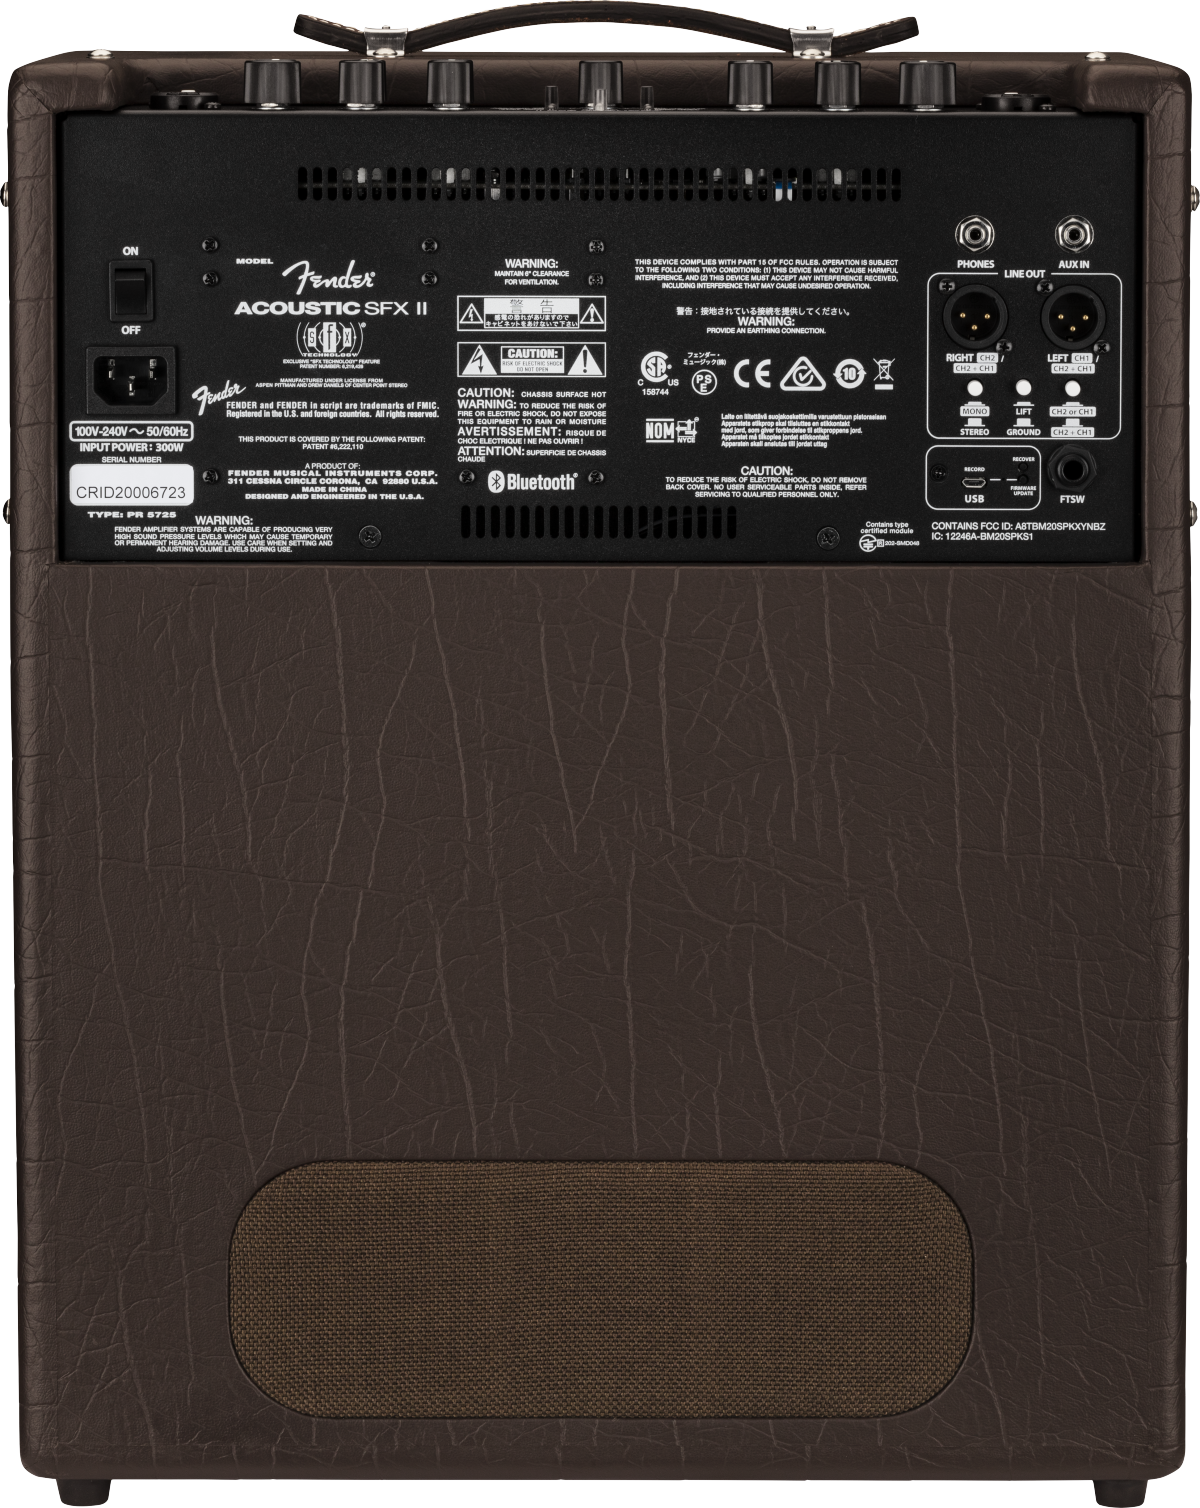 Fender Acoustic Jr Sfx Ii 2x100w 1x8 + 1x6.5 - Combo Ampli Acoustique - Variation 1